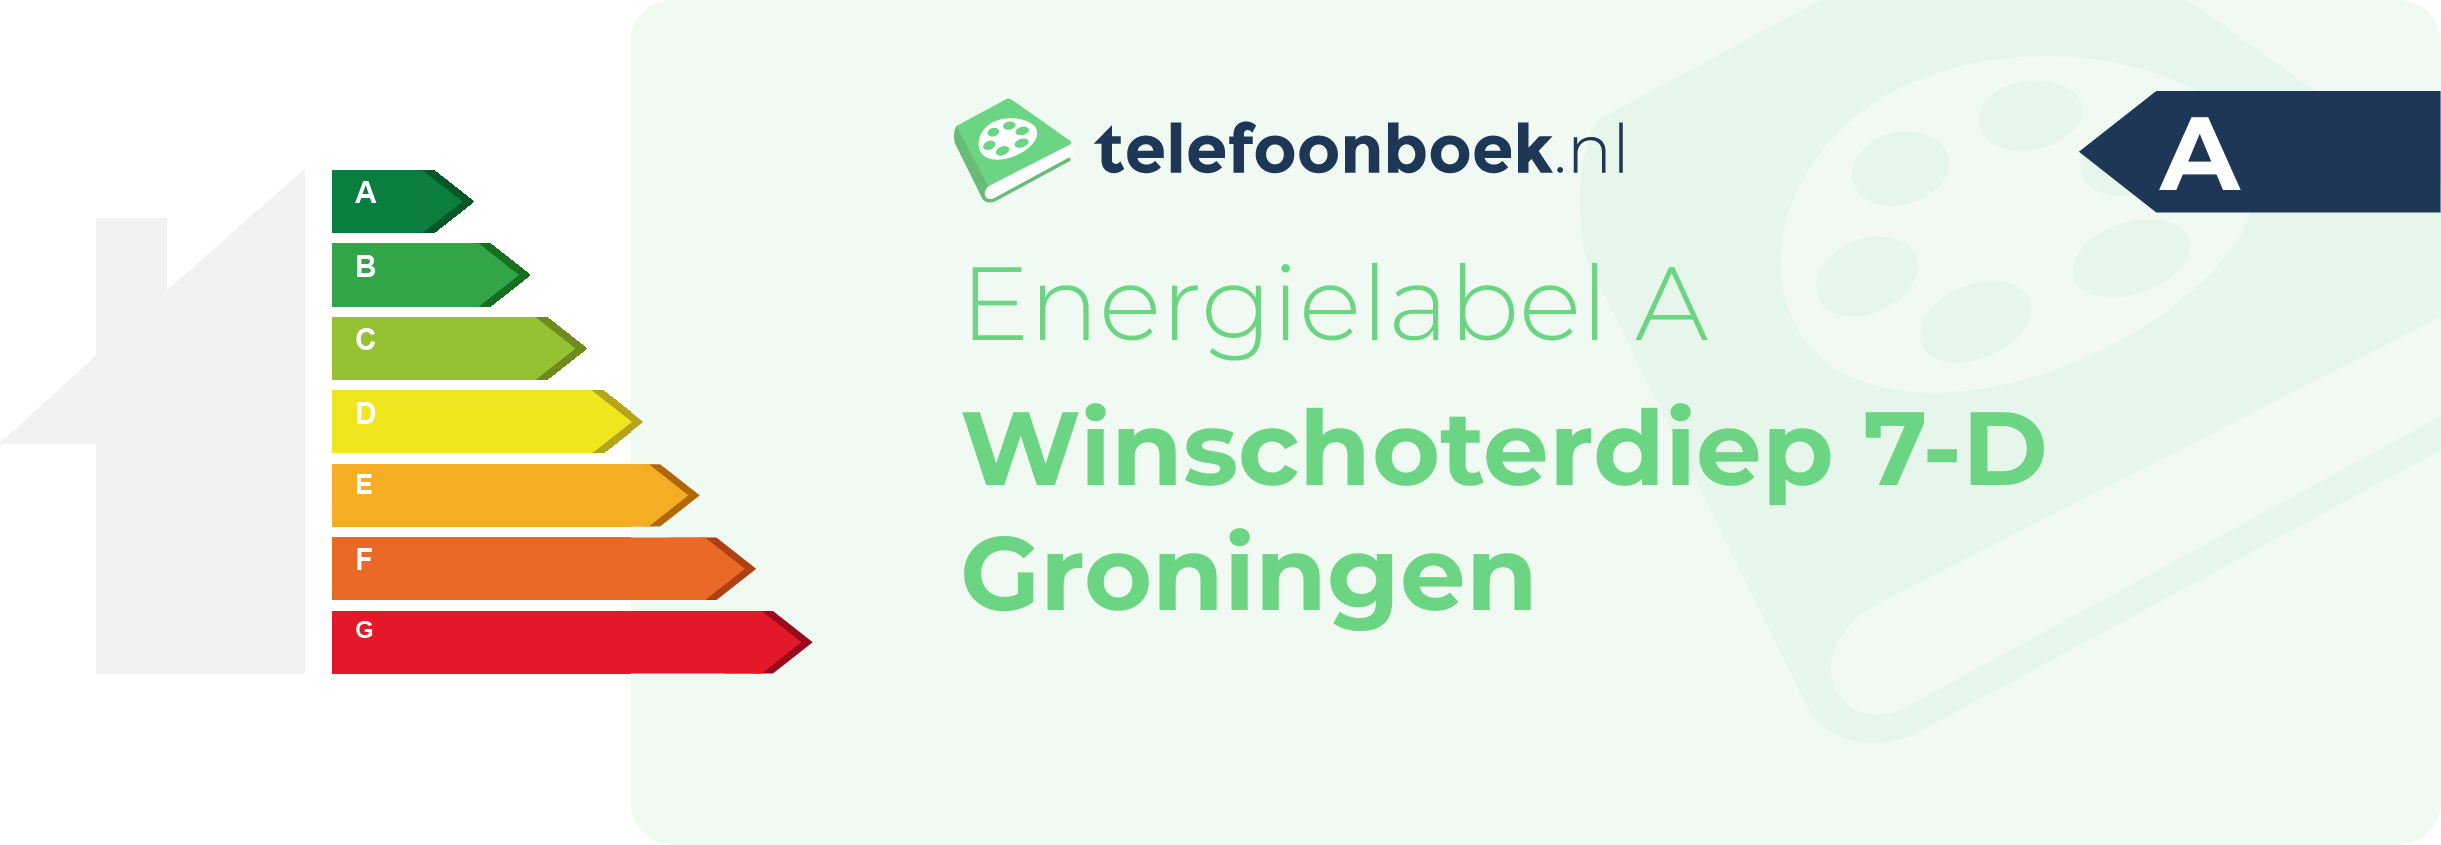 Energielabel Winschoterdiep 7-D Groningen